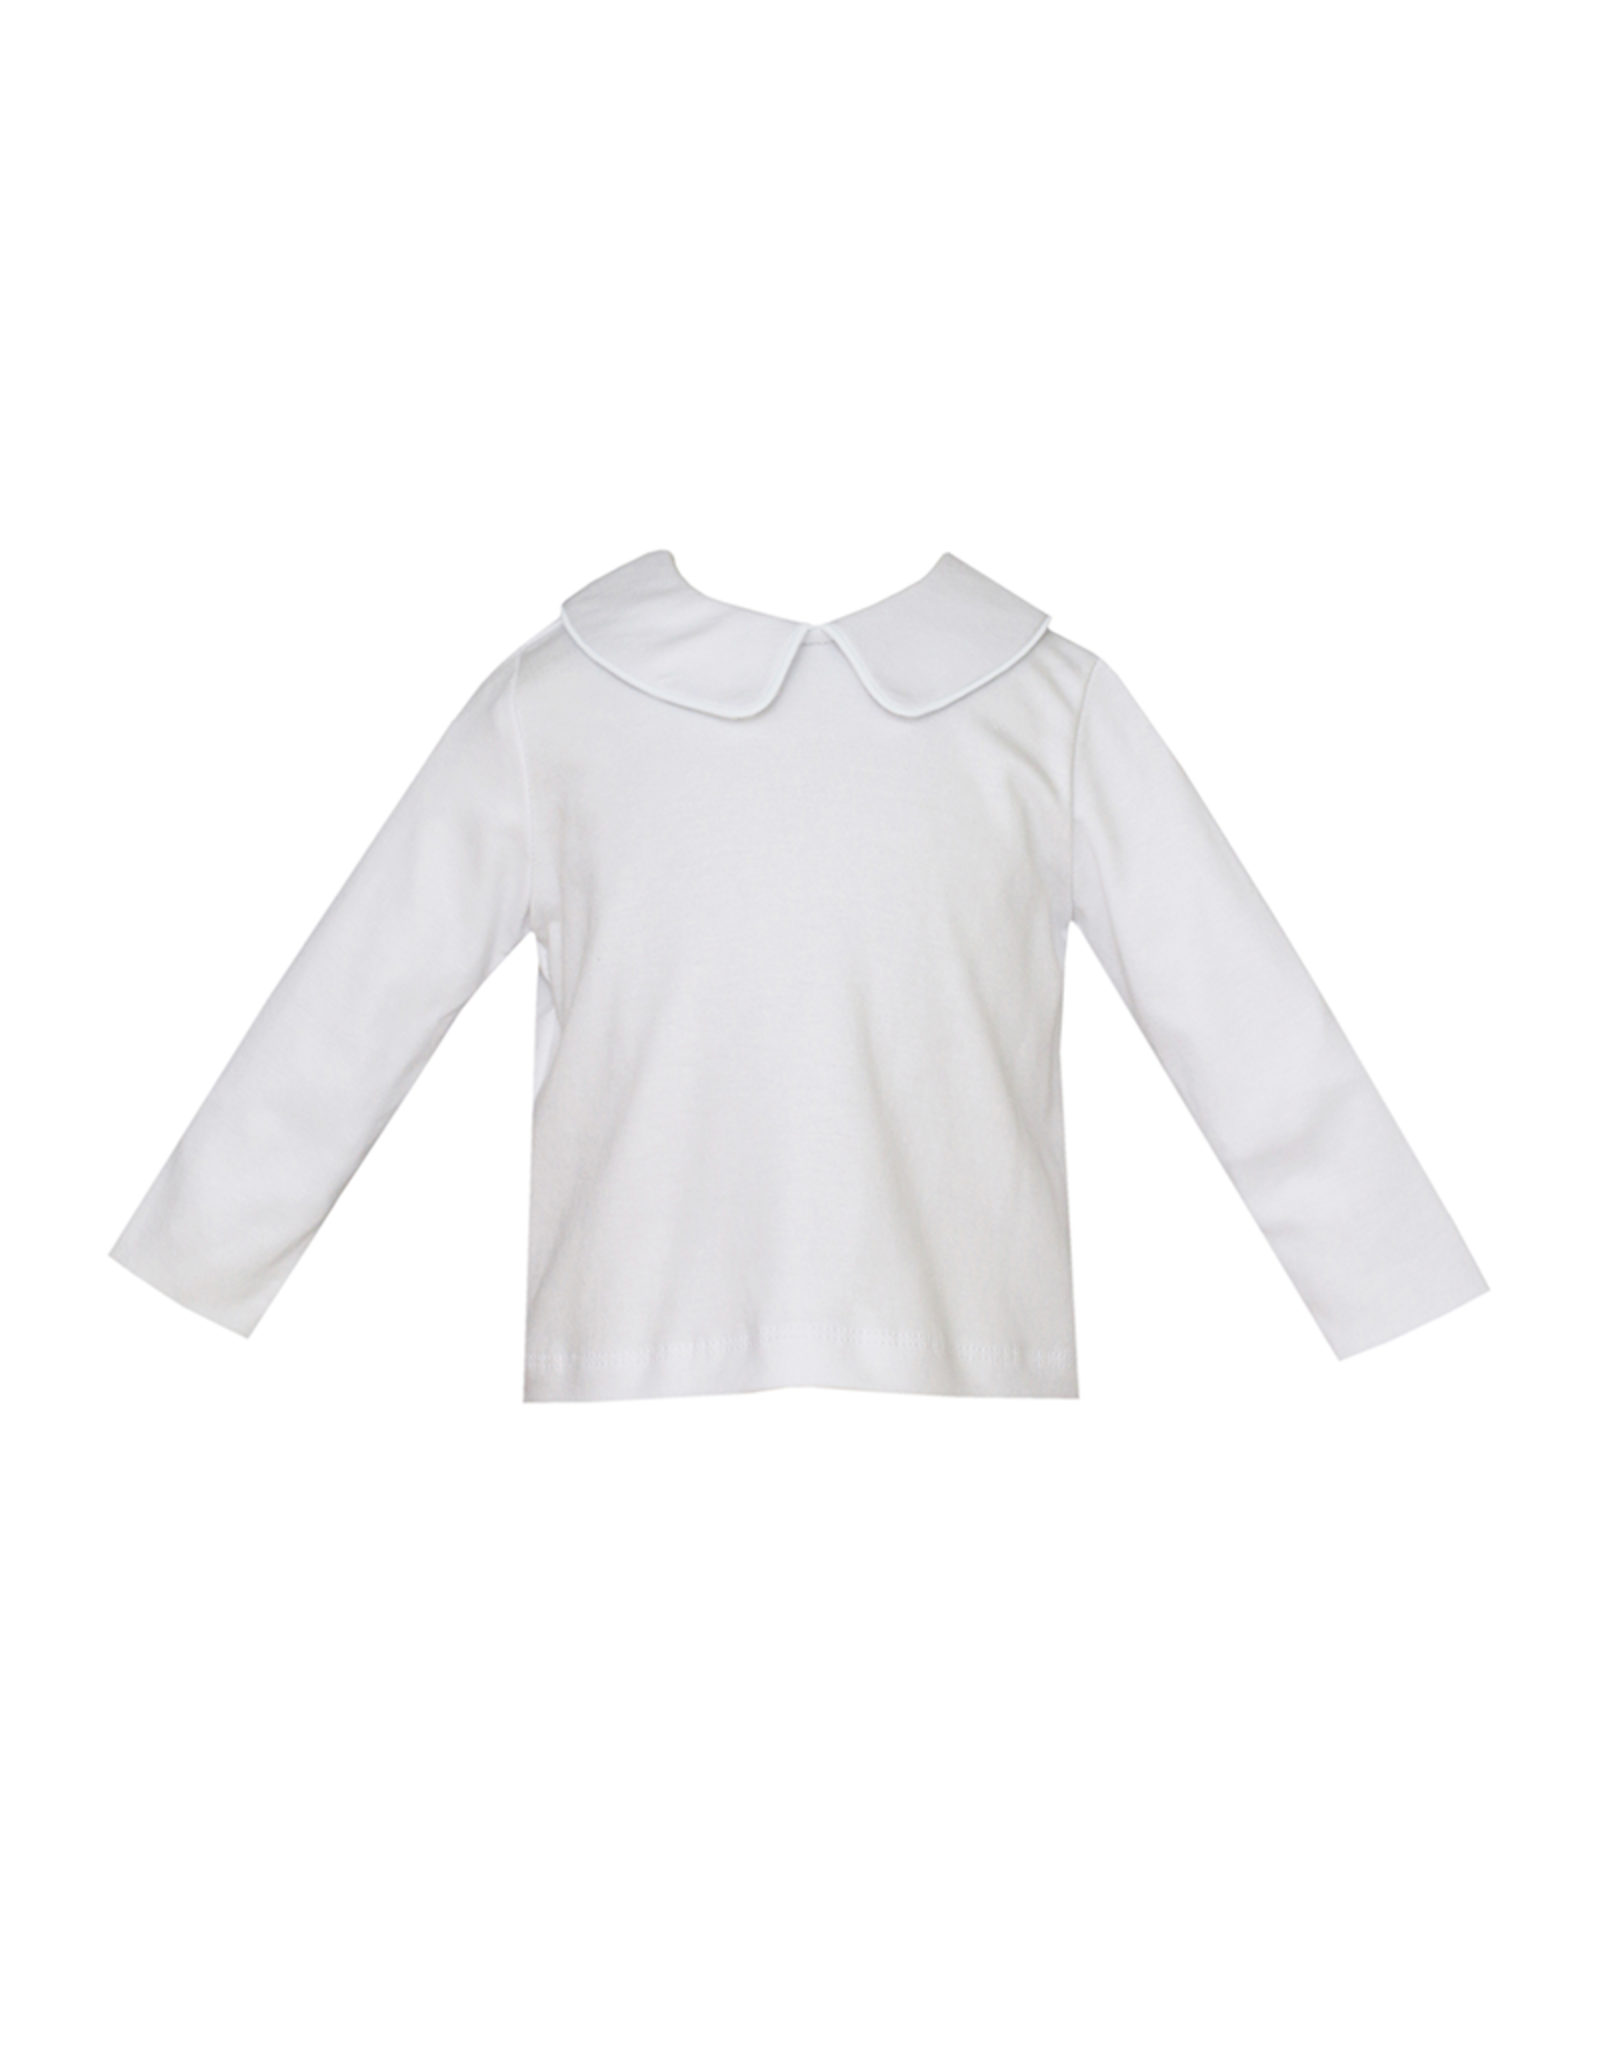 Petit Bebe 476LS Knit White Peter Pan Shirt